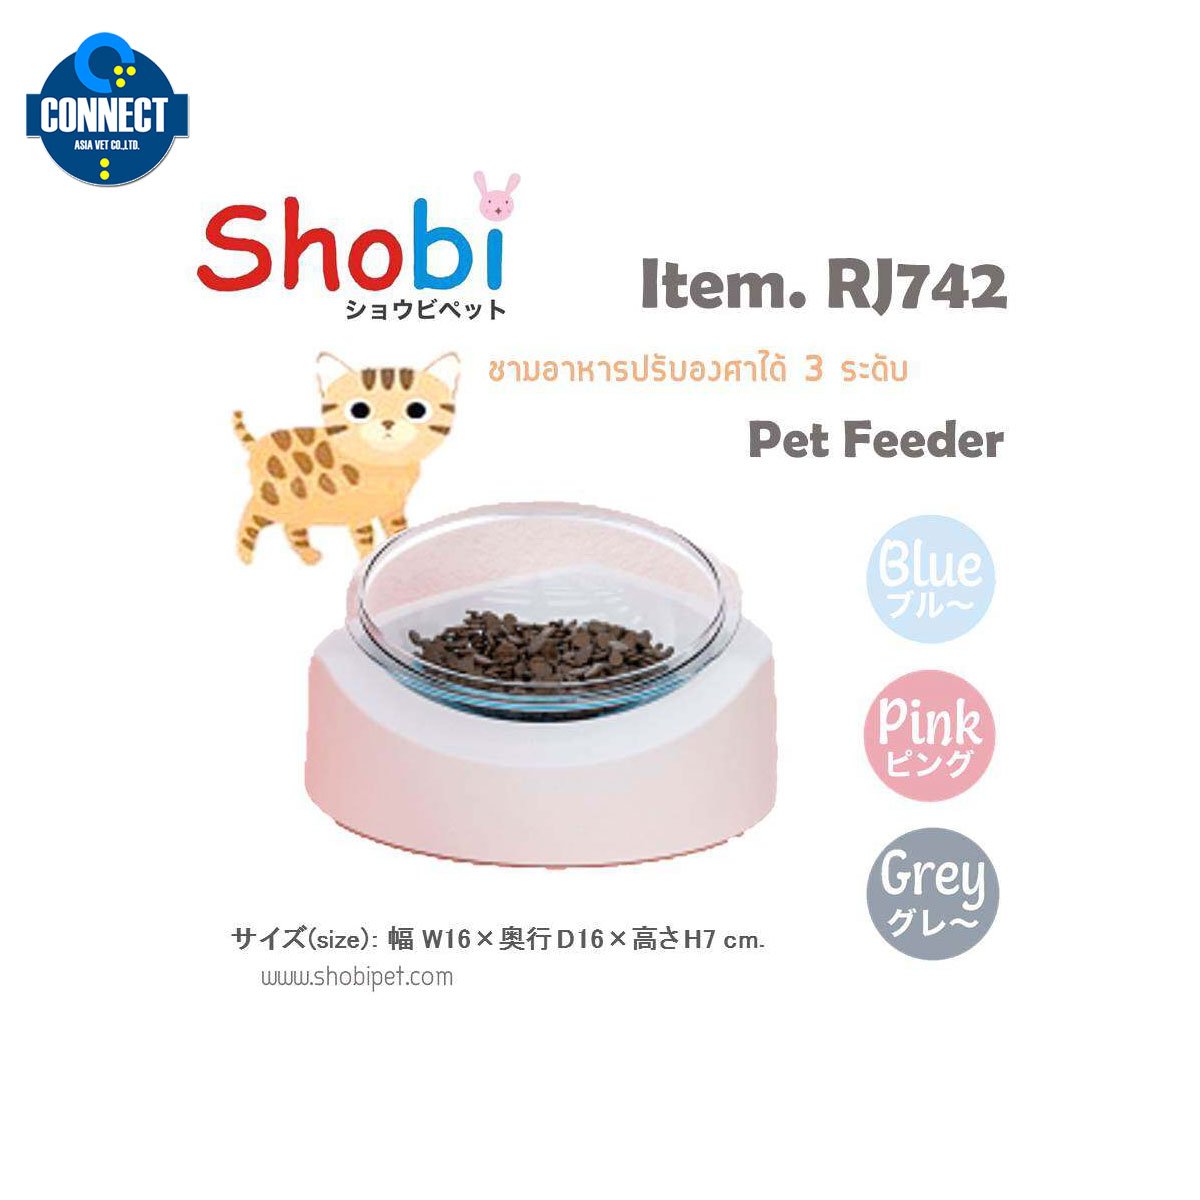 Shobi - ชามอาหารปรับองศาได้ ถ้วยอาหารแมว ชามให้อาหารแมว ถ้วยเซรามิค ชามอาหารสัตว์เลี้ยง - RJ742